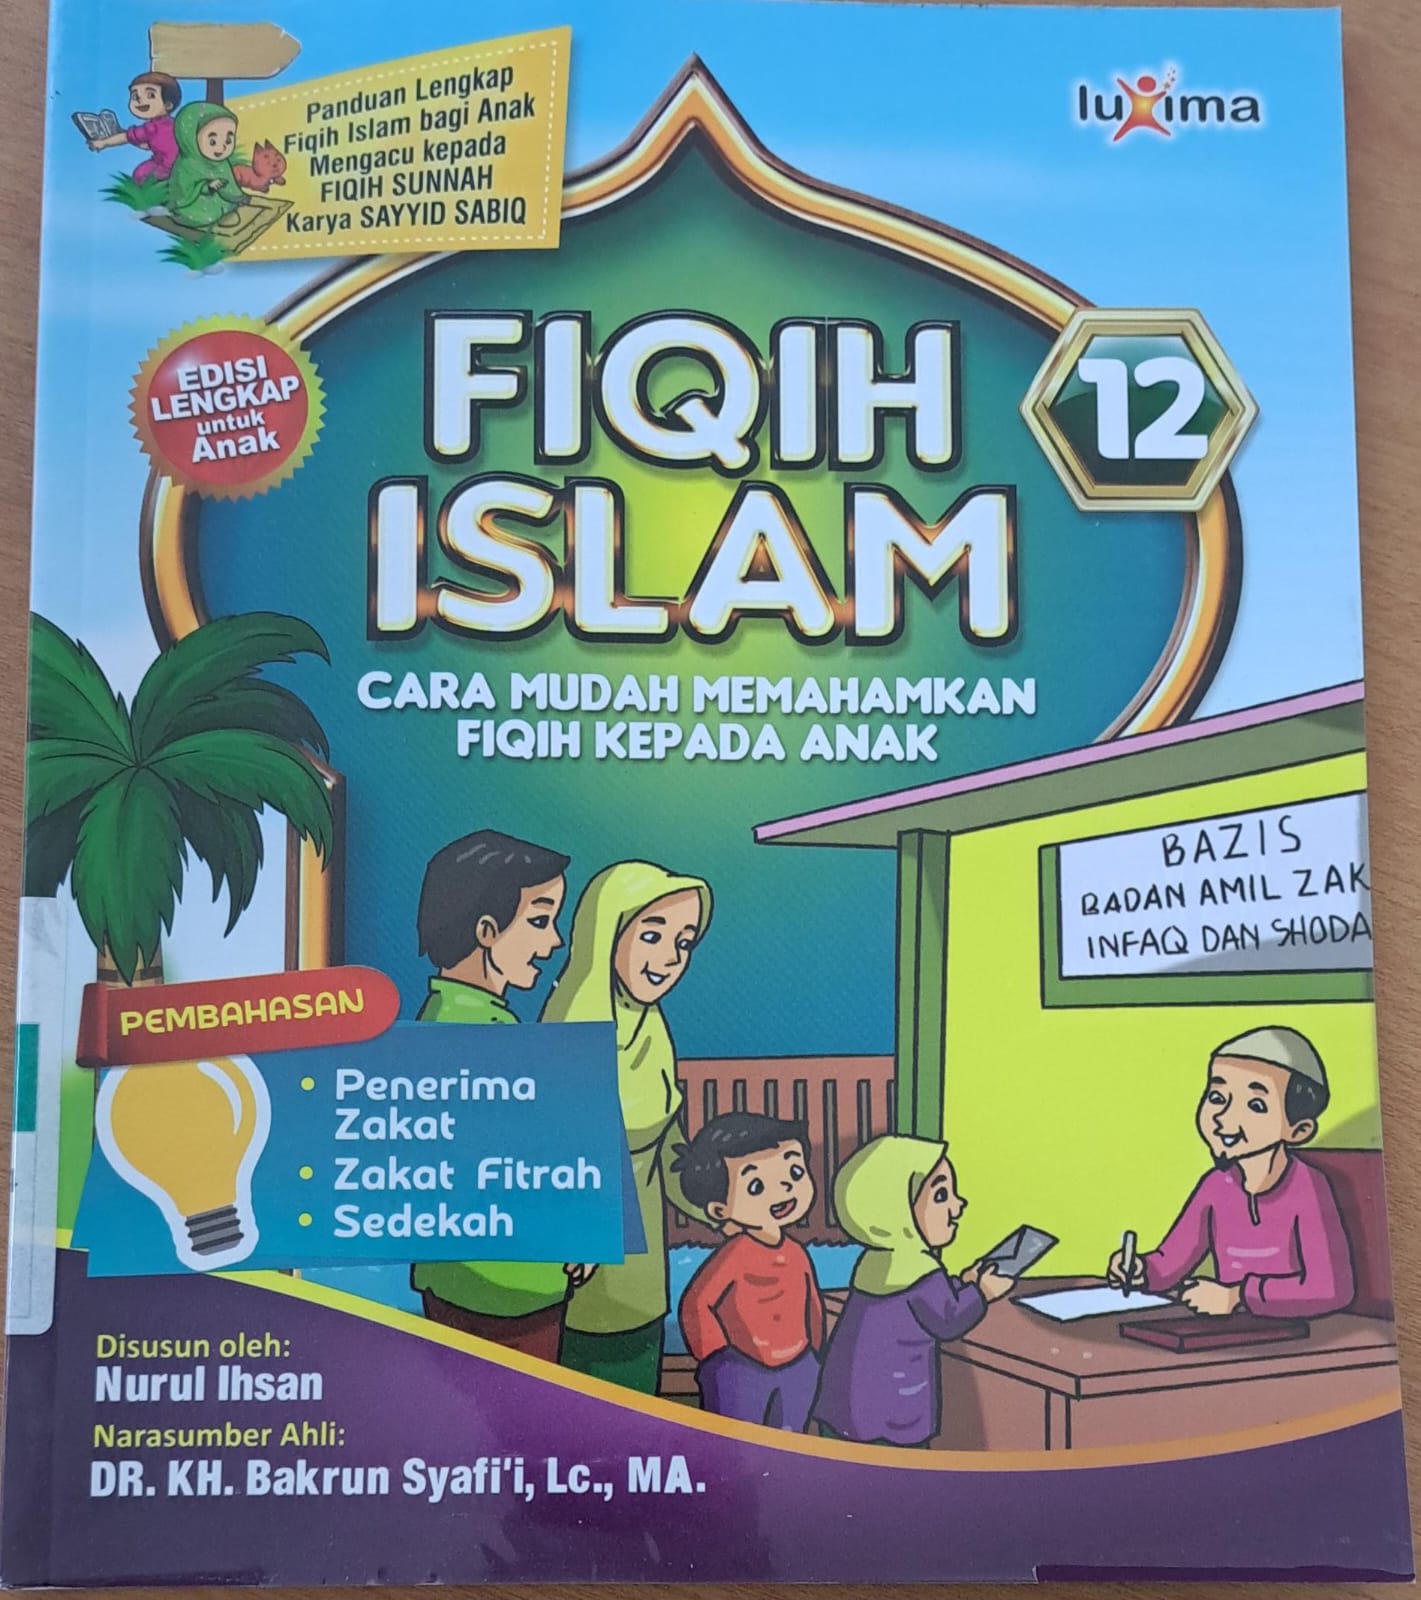 Fiqih islam jilid 12 :  Cara mudah memahamkan fiqih kepada anak